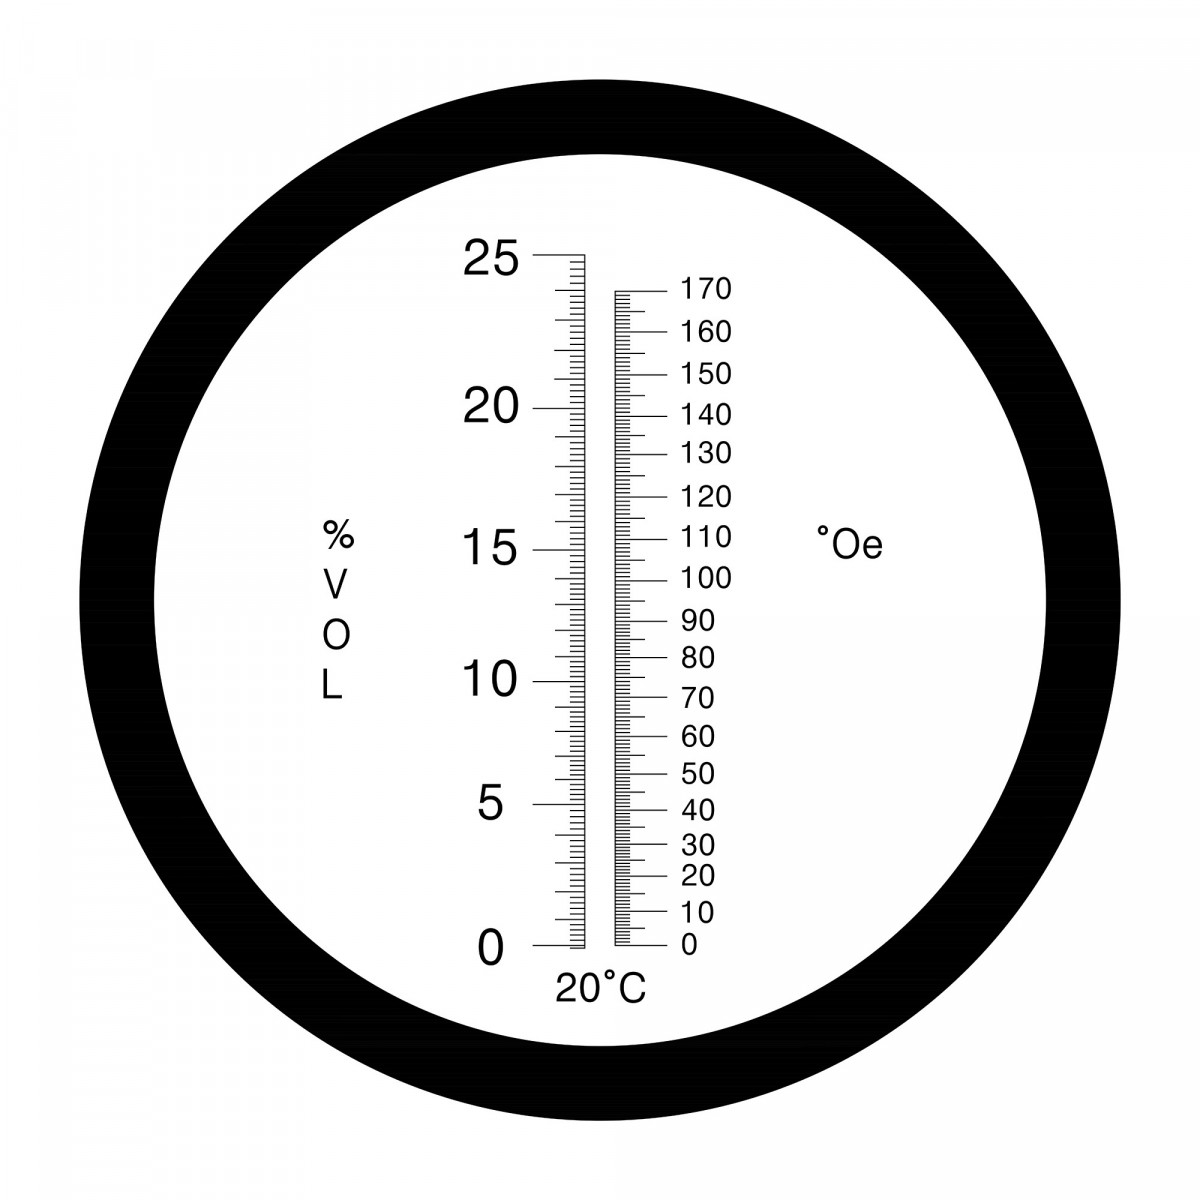 Refraktometer 0-170°Oe / 0-25 Vol.-% mit ATC